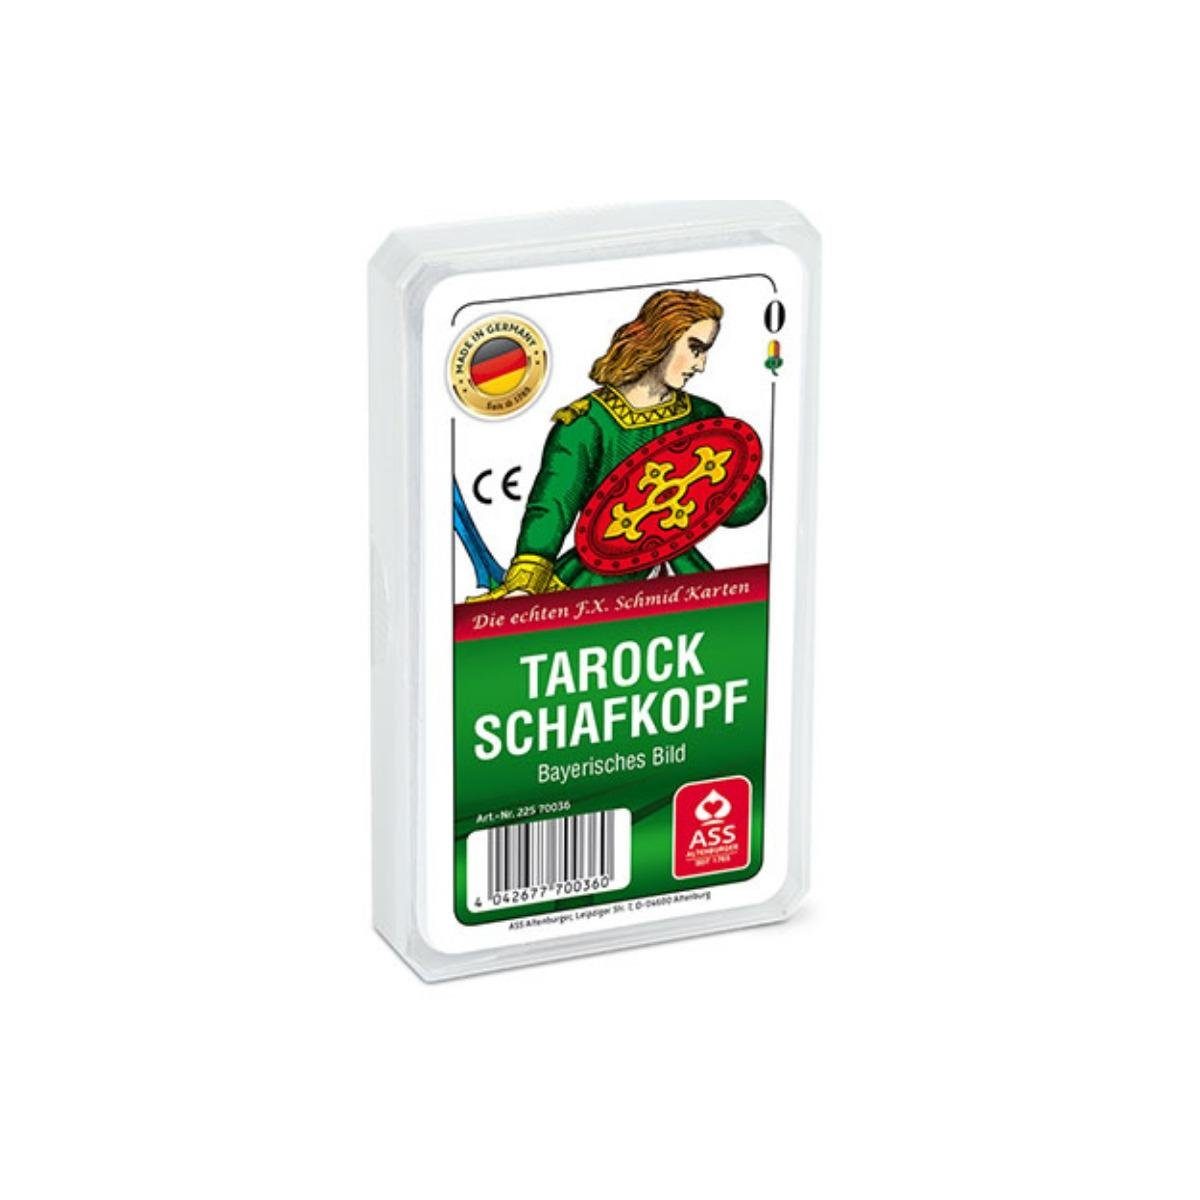 ASS Altenburger Spiel, Familienspiel 22570036 - Schafkopf/Tarock, Bayerisches Bild (Kunststoffetui)